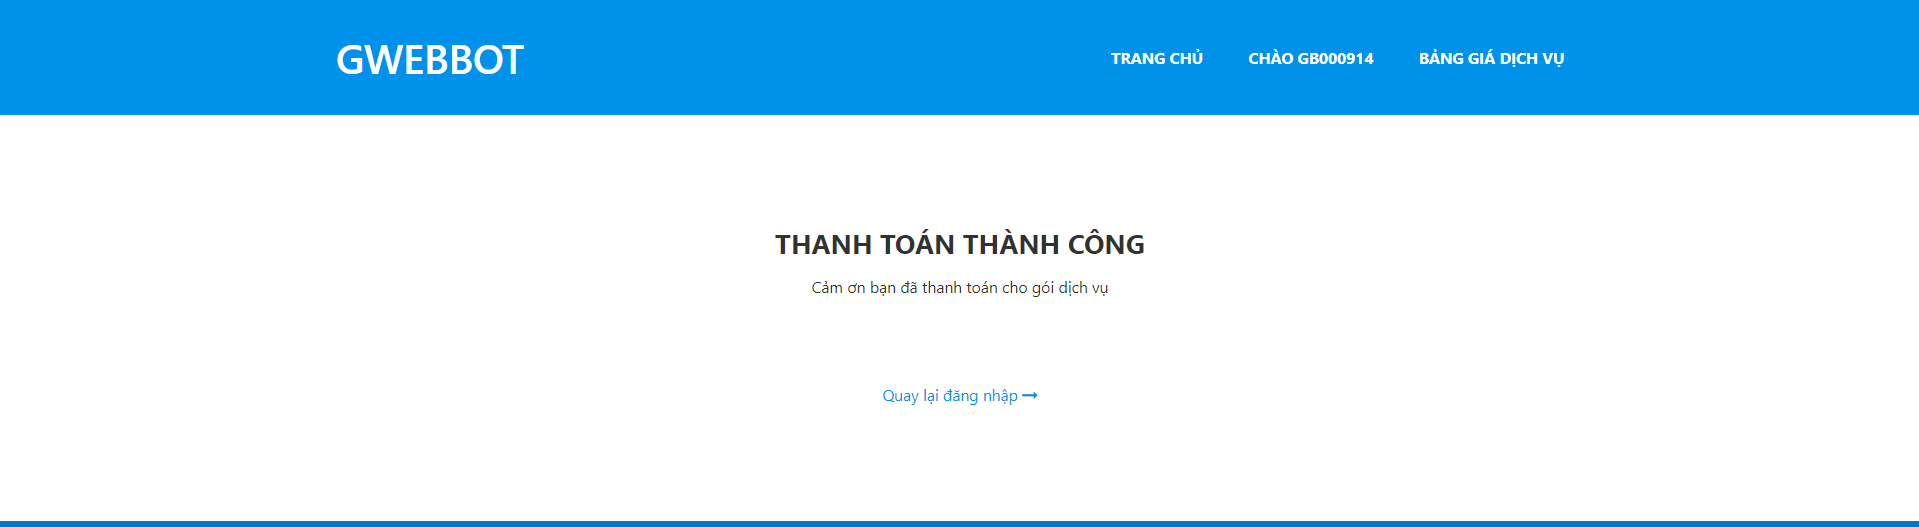 https://gwebbot.com/UploadedFiles/UserManual/2.2.ThanhToan.png